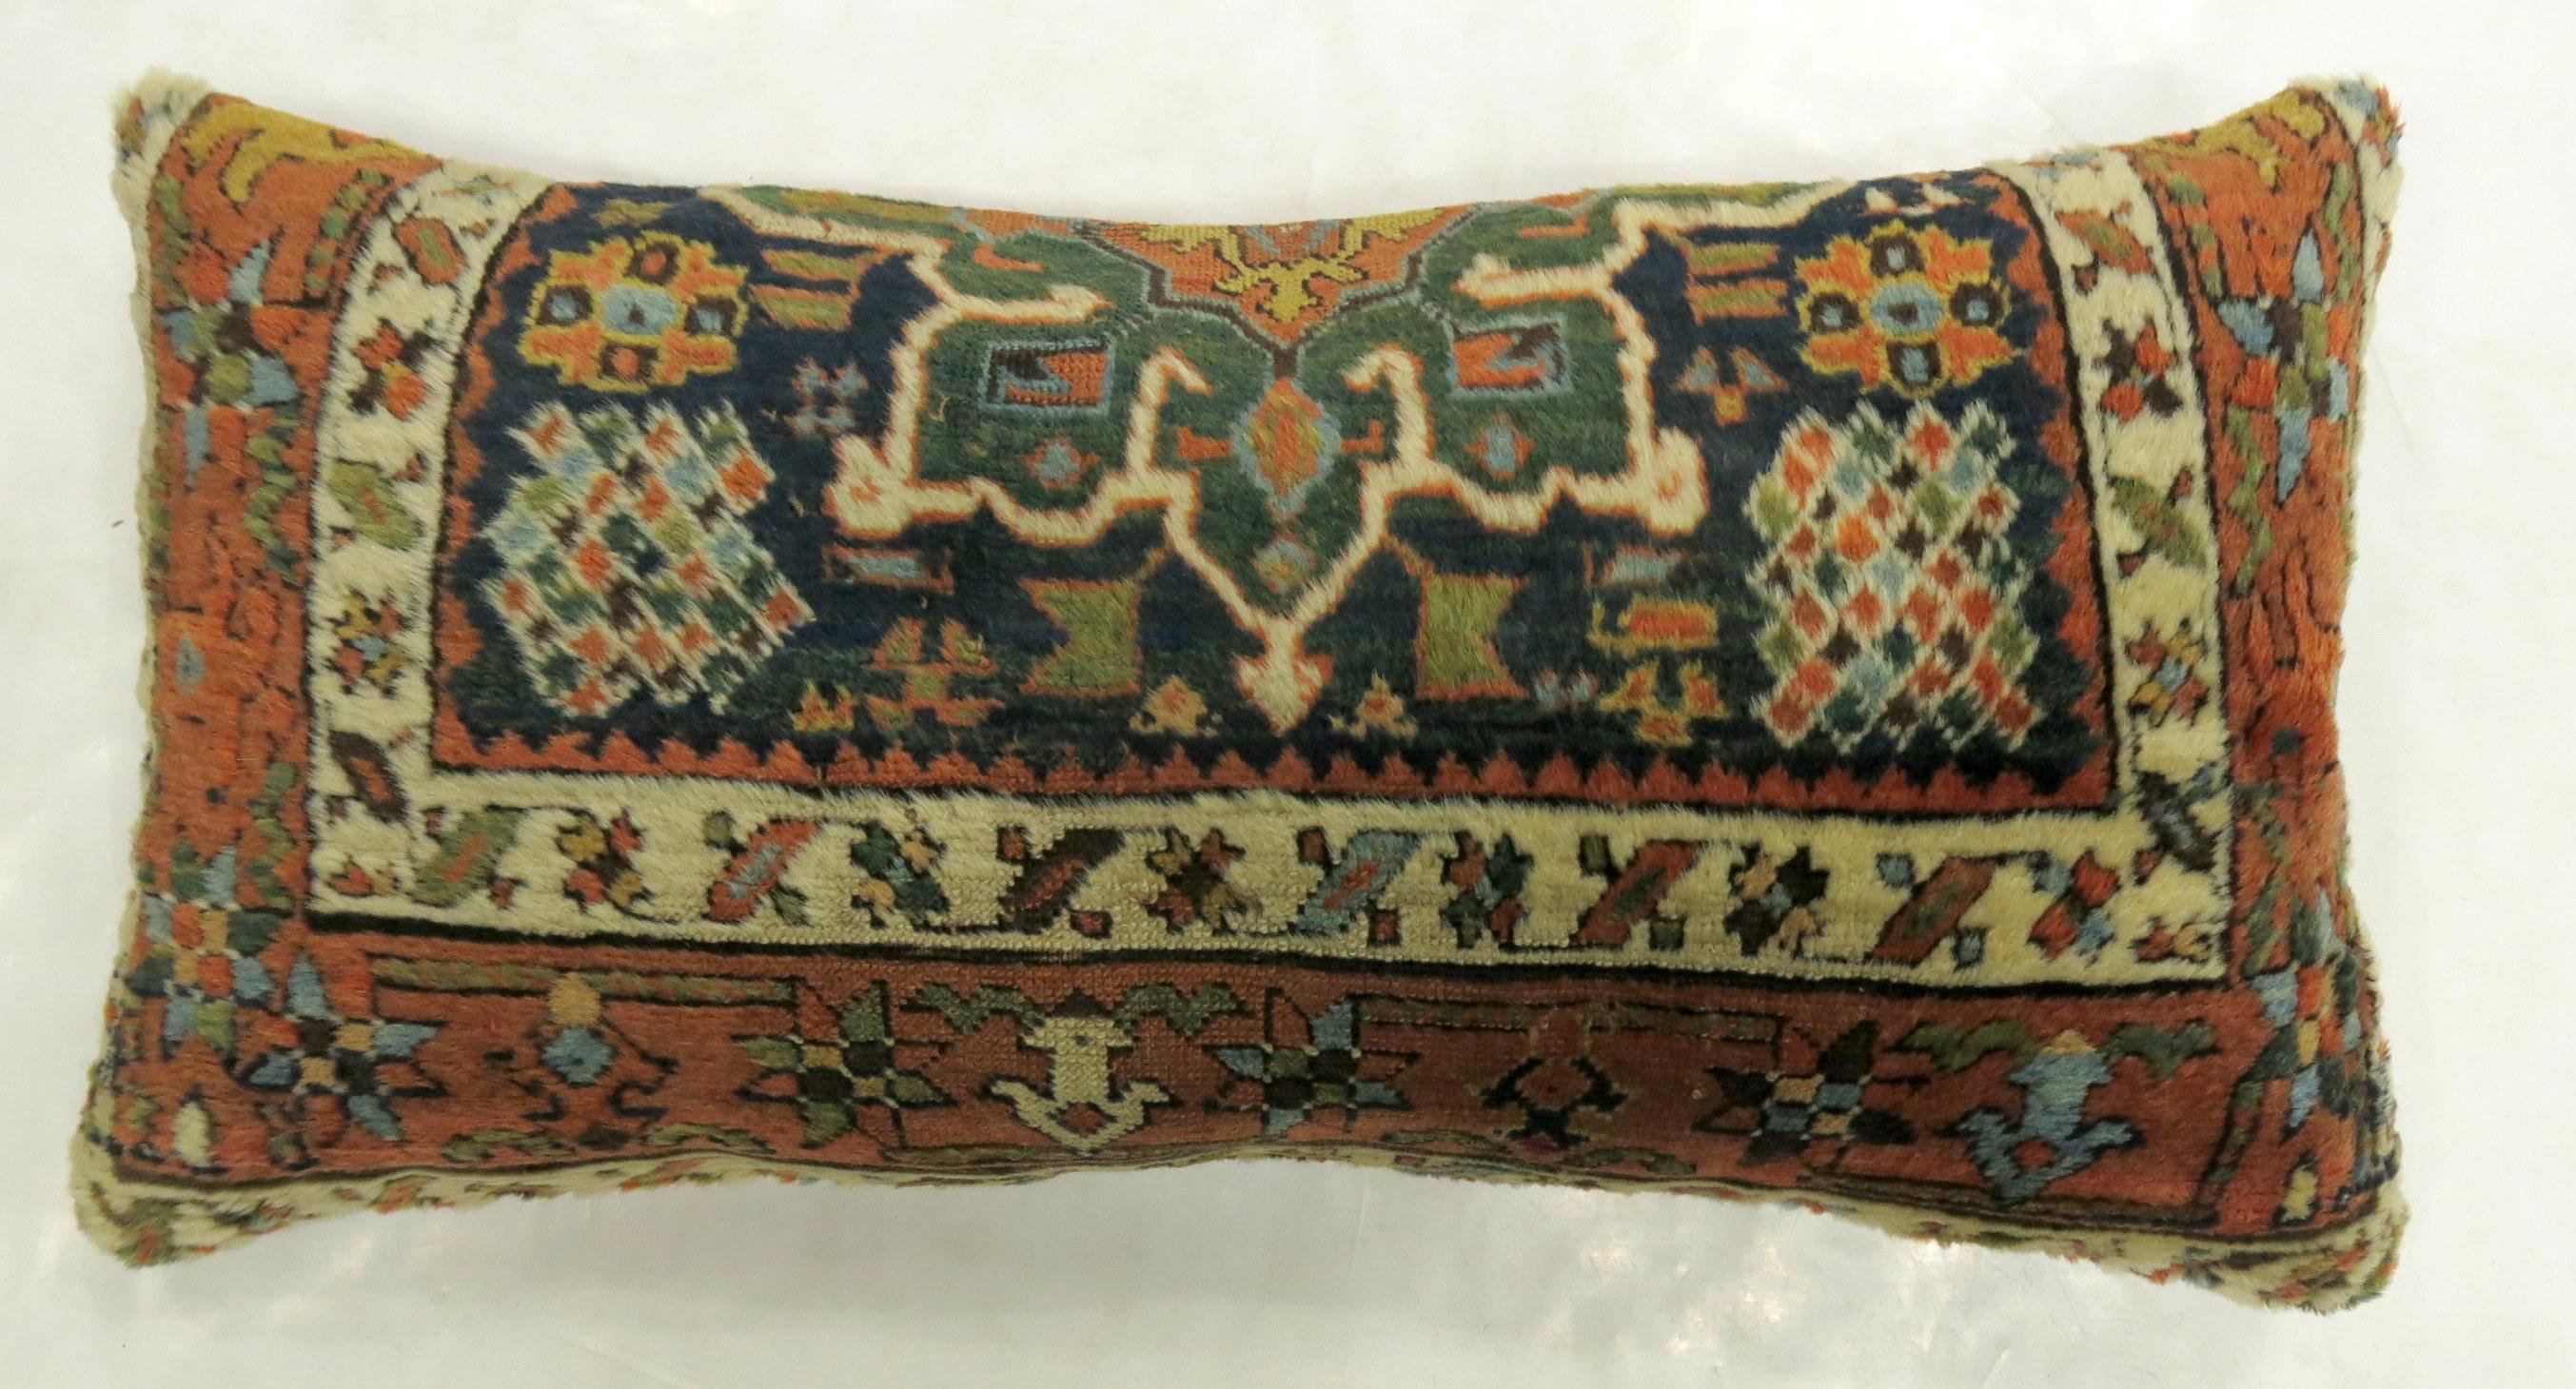 Kissen aus einem alten persischen Karadja Heriz-Teppich.

Maße: 16